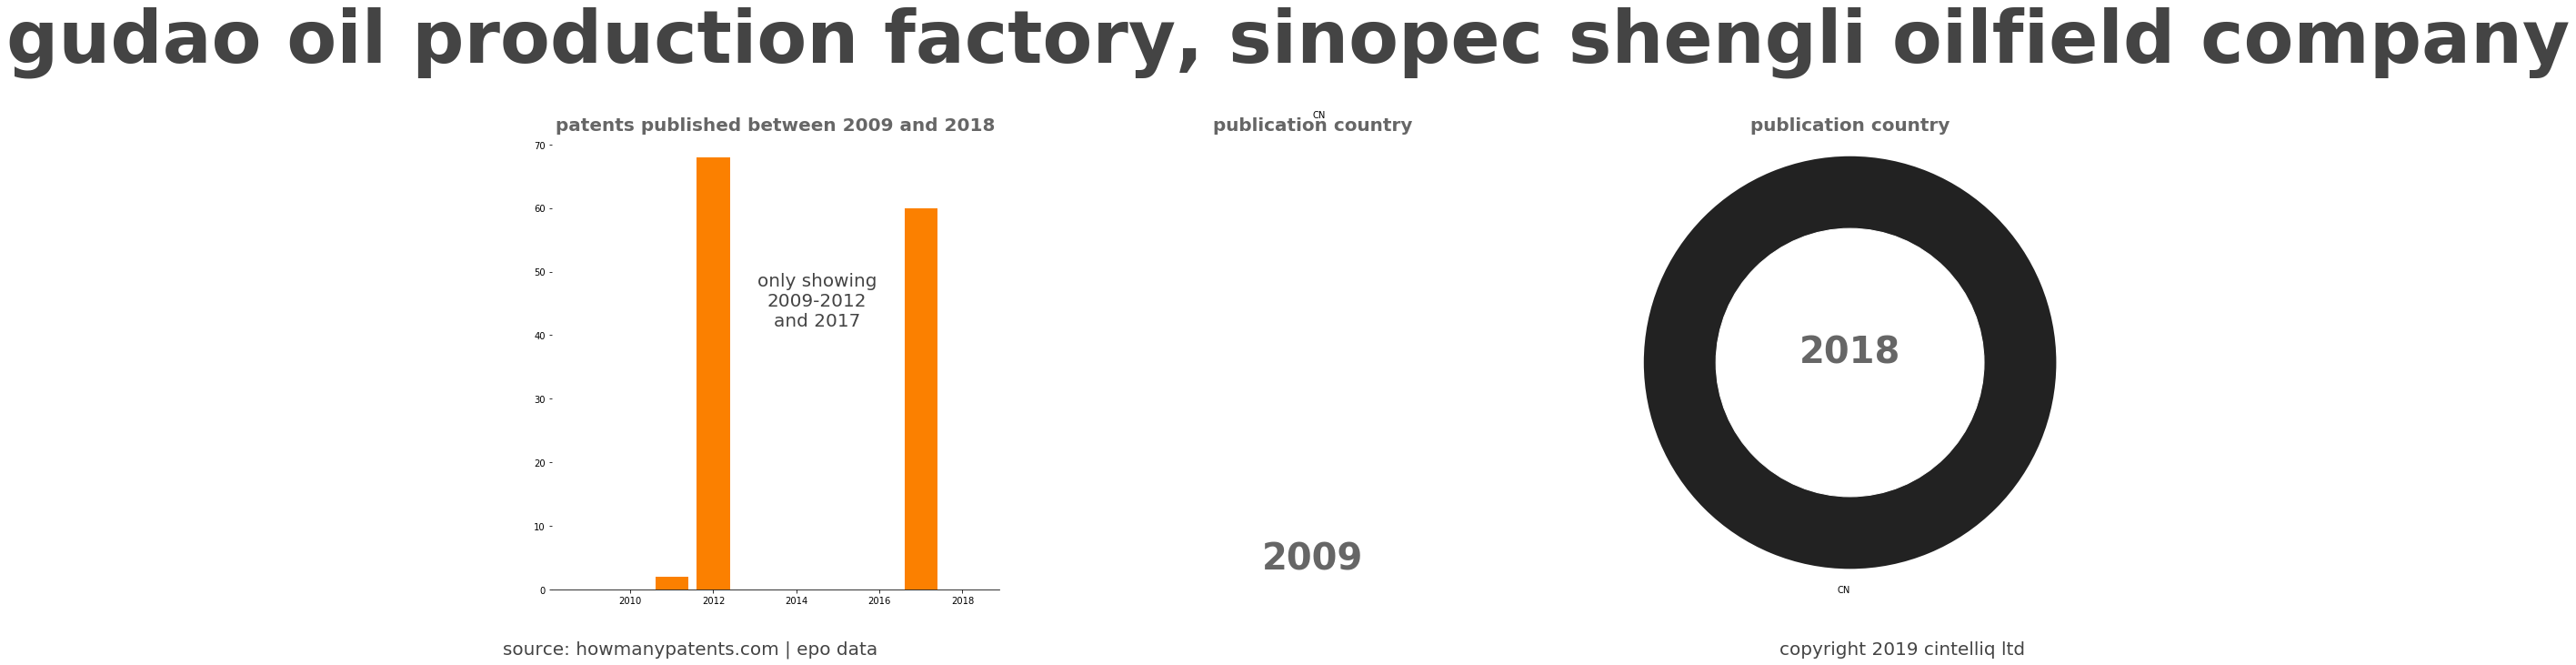 summary of patents for Gudao Oil Production Factory, Sinopec Shengli Oilfield Company